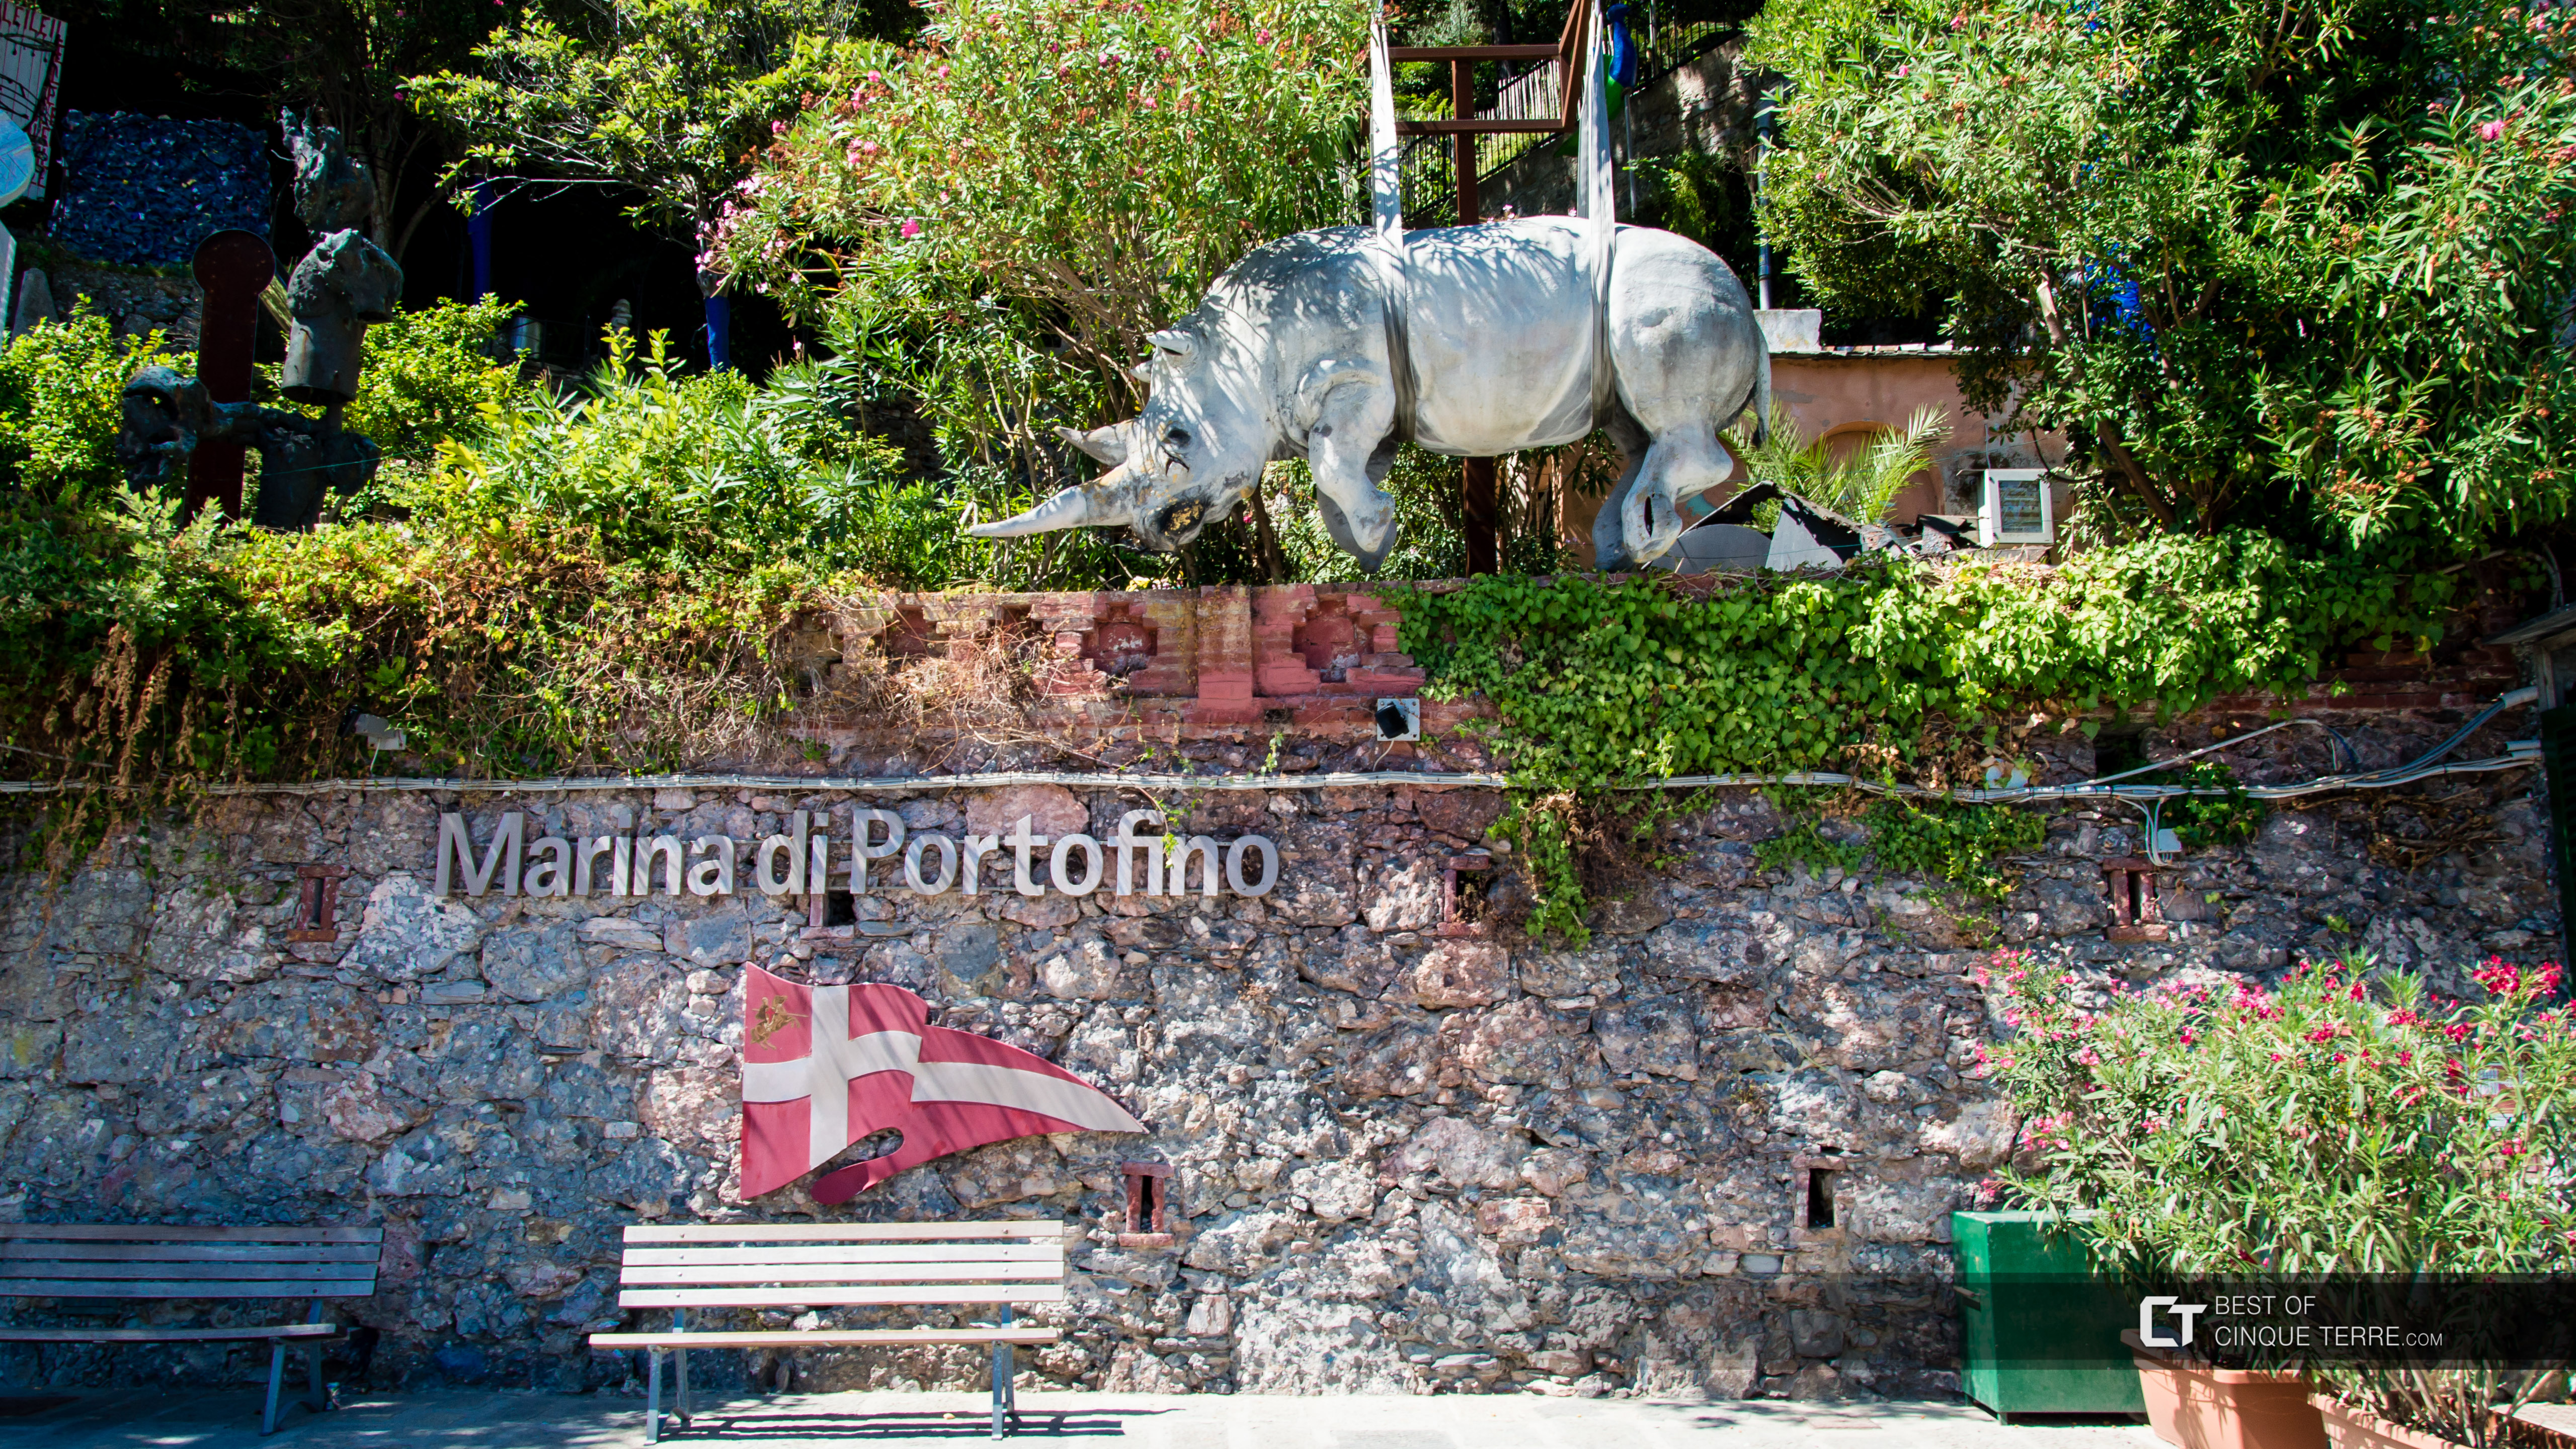 Pomnik nosorożca, symbol miasta, Portofino, Włochy